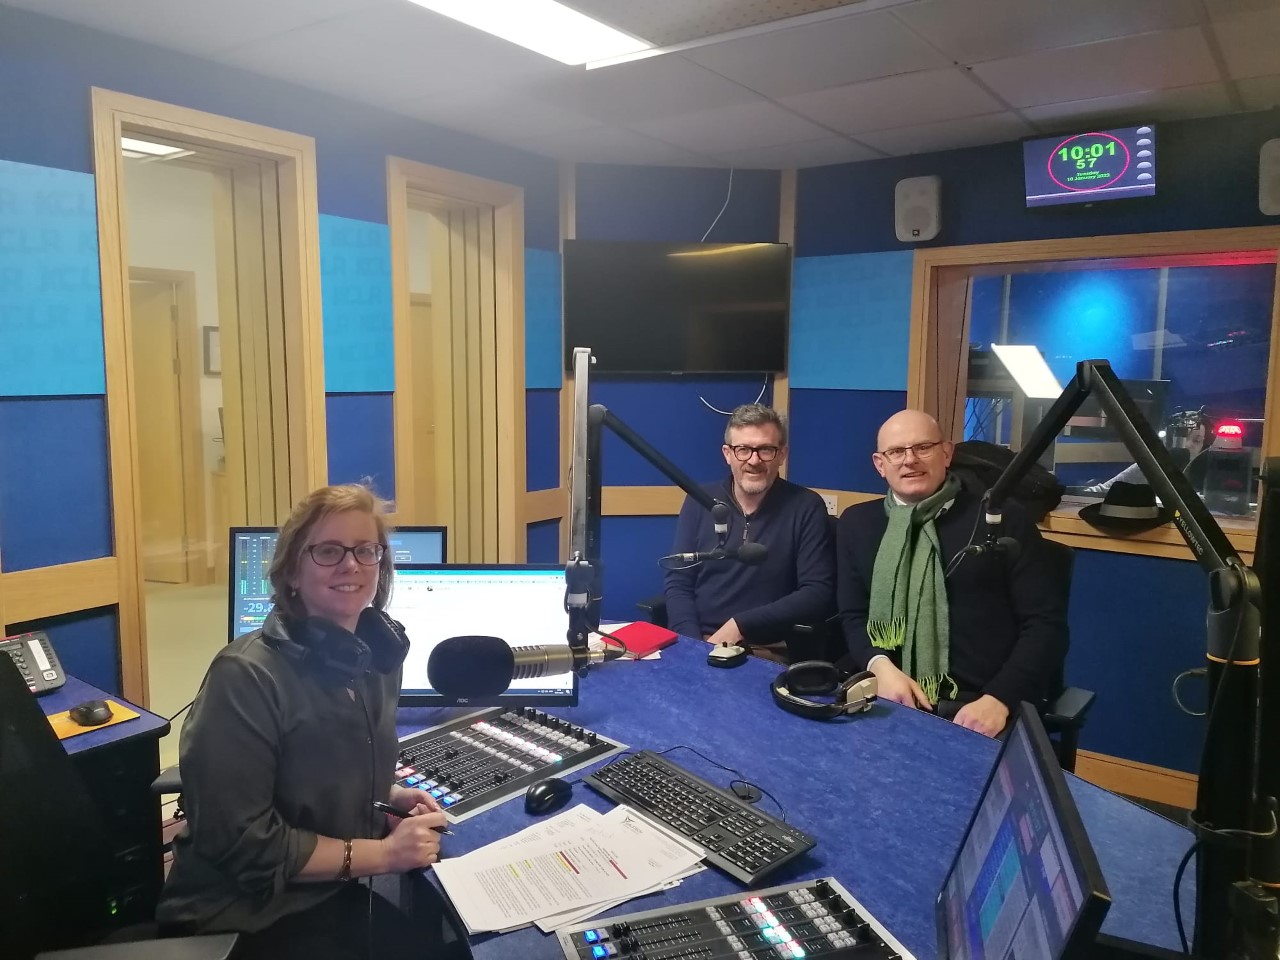 Eimear Ní Bhraonáin with Michael Boyd and Adrian O'Neill